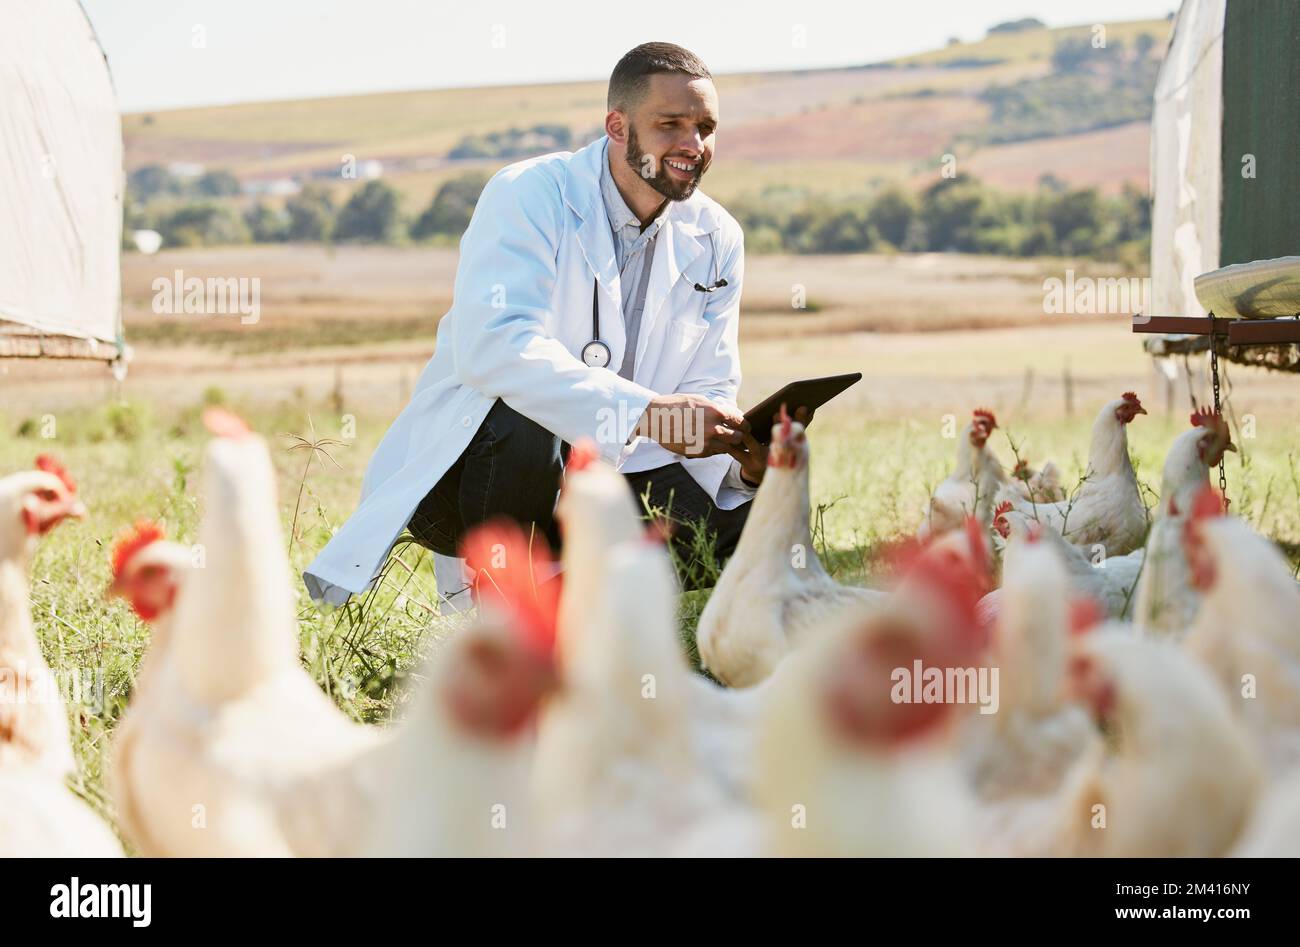 Uomo, veterinario o tablet su allevamento di pollo per il benessere sanitario, la compliance influenza aviaria o la ricerca sugli ormoni della crescita. Sorridere, felice o animali medico con Foto Stock